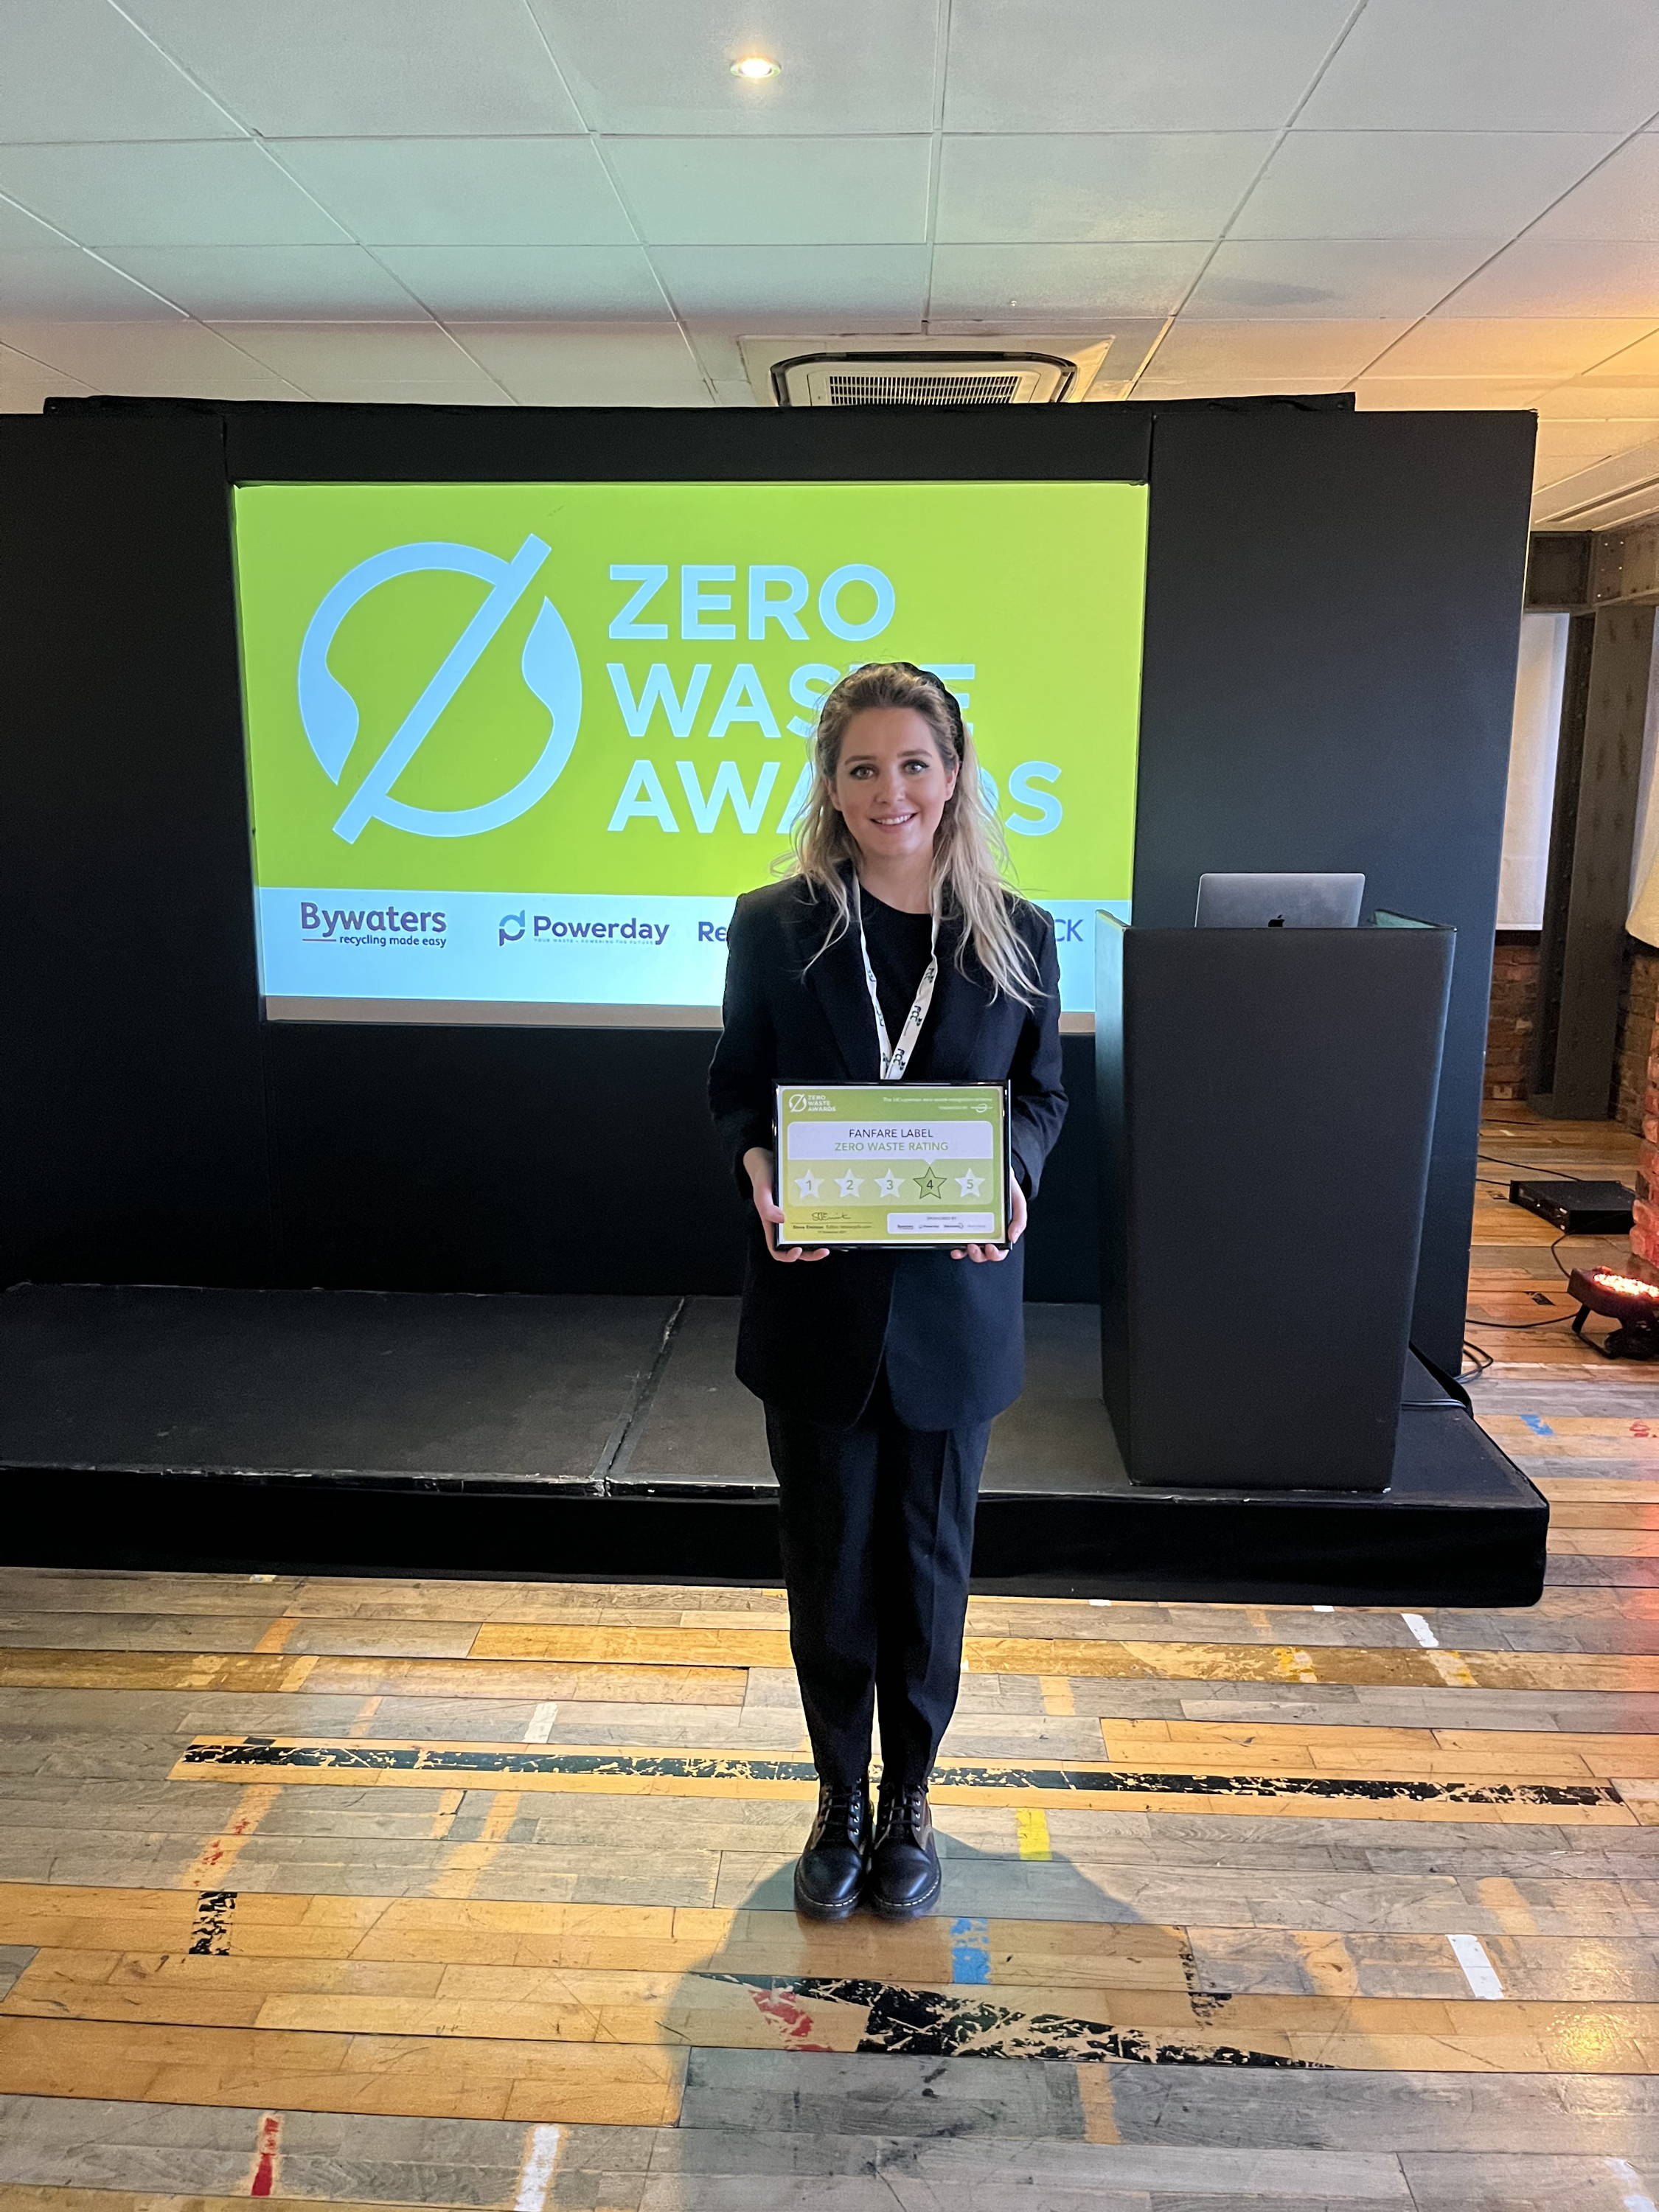 Fanfare Label is a winner of the Zero Waste Awards 2021